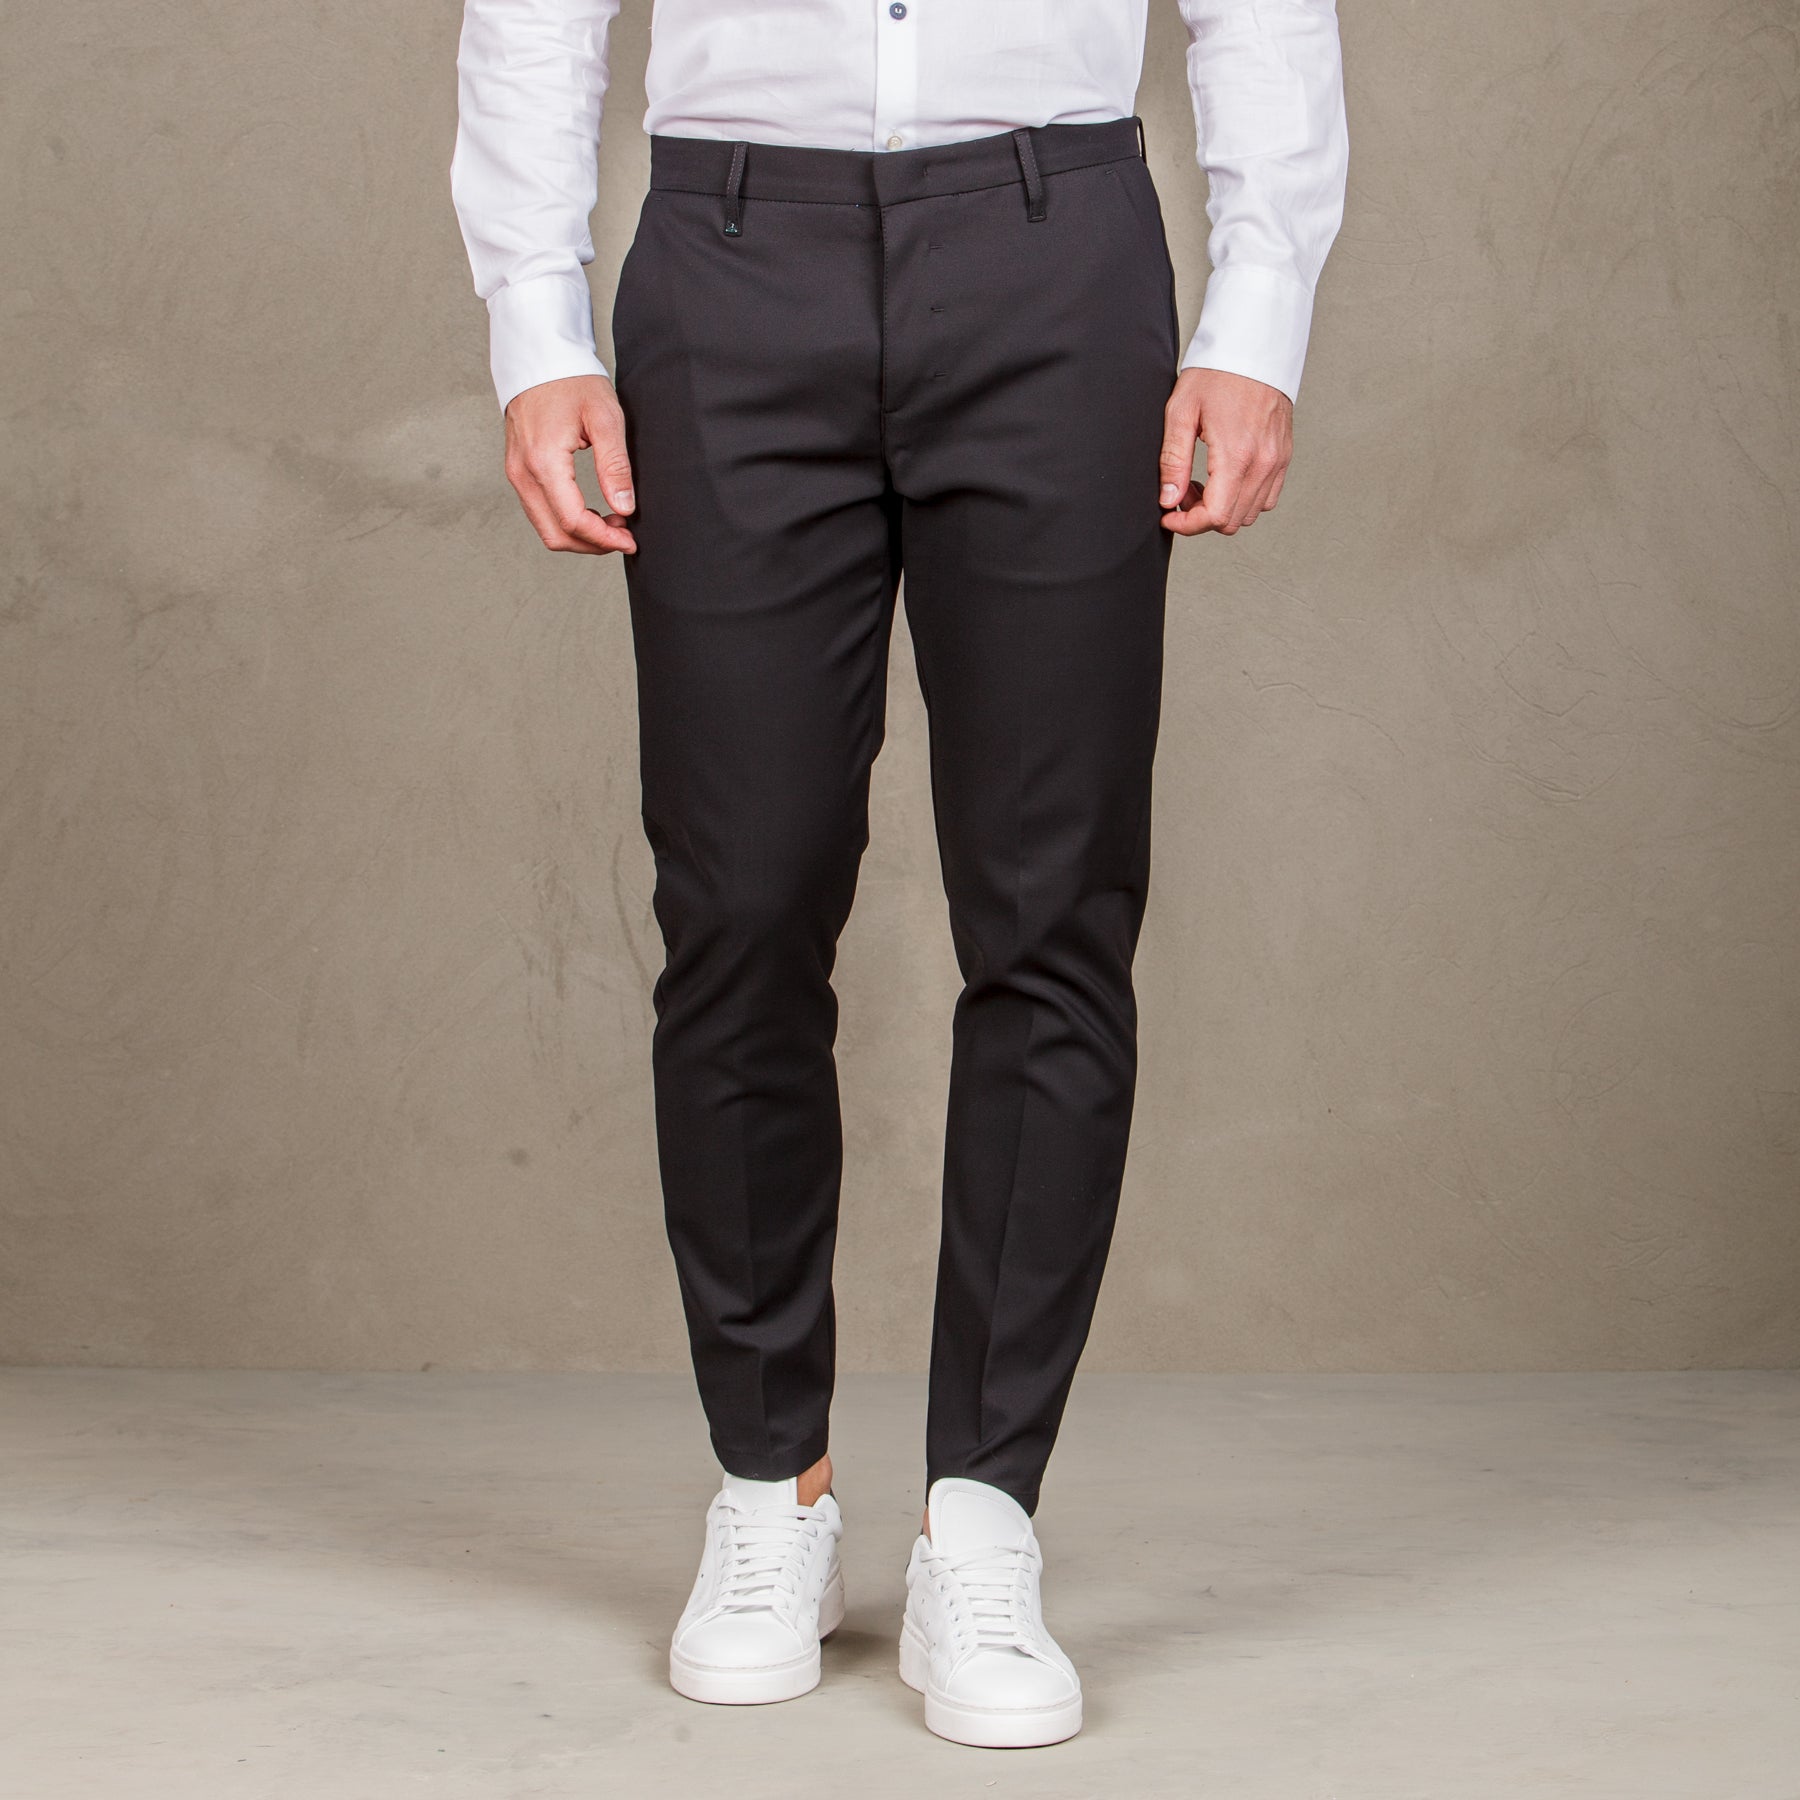 Pantalone  elegance con tasche a filetto -  nero uomo  - 4